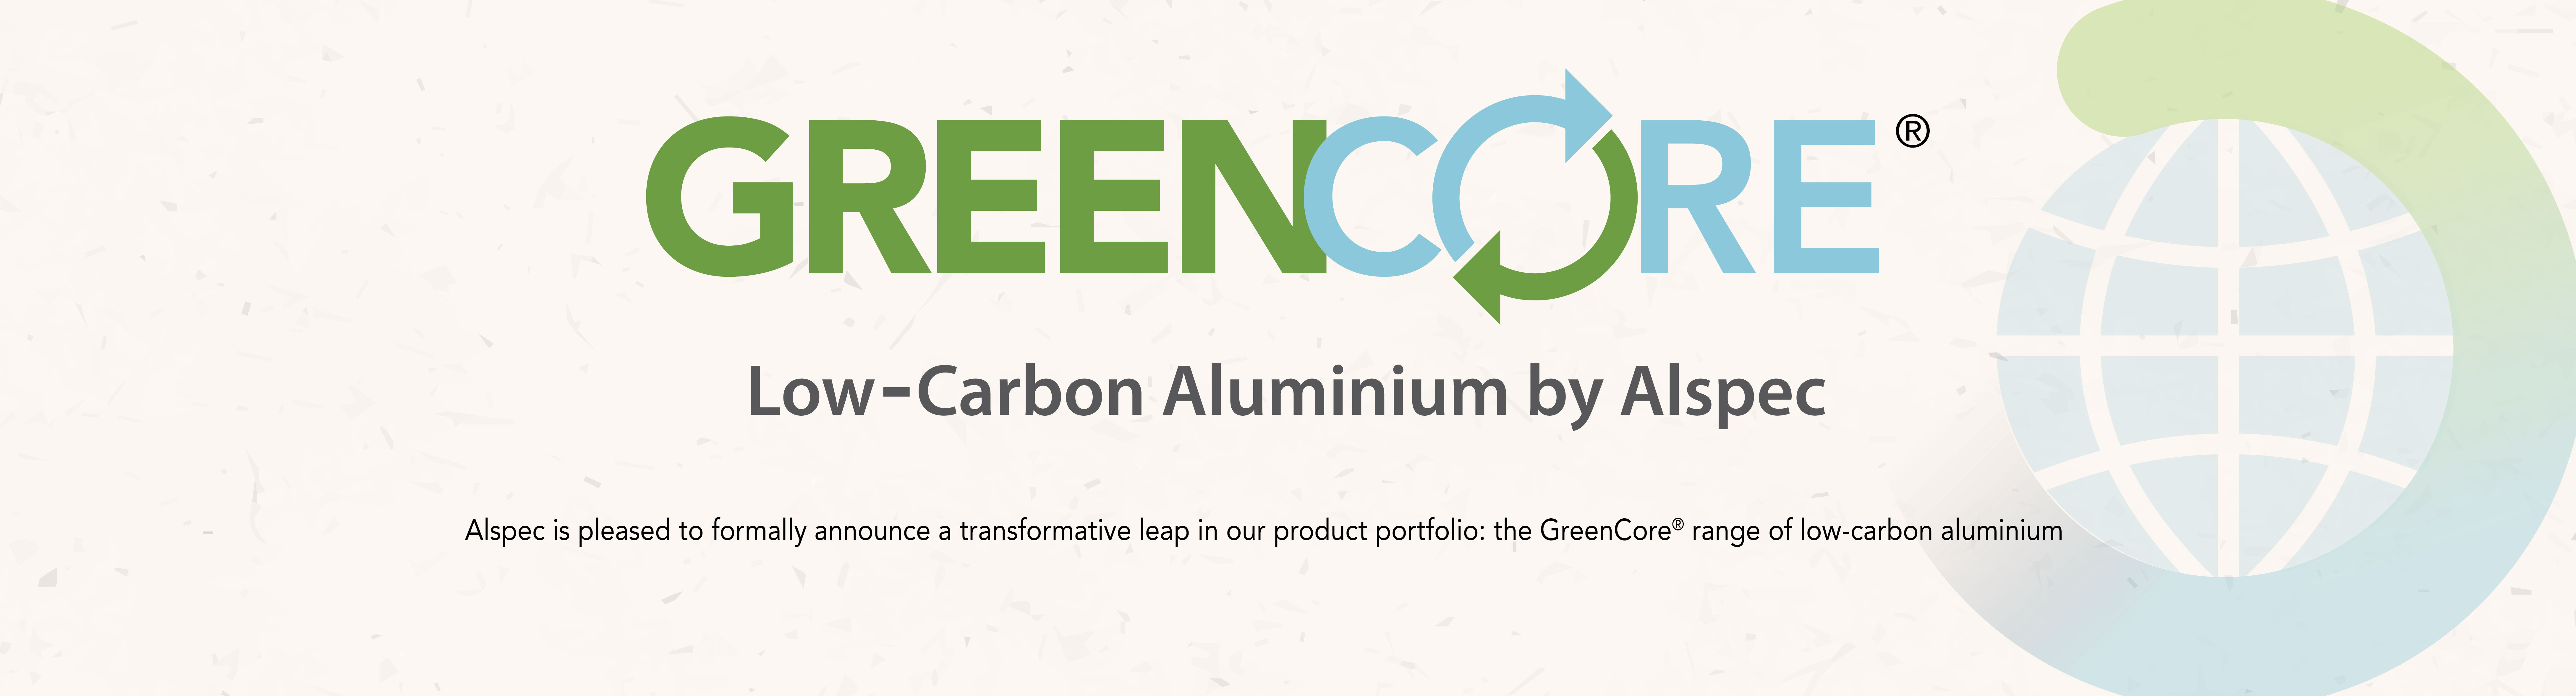 Low-Carbon Aluminium powered by Alspec
